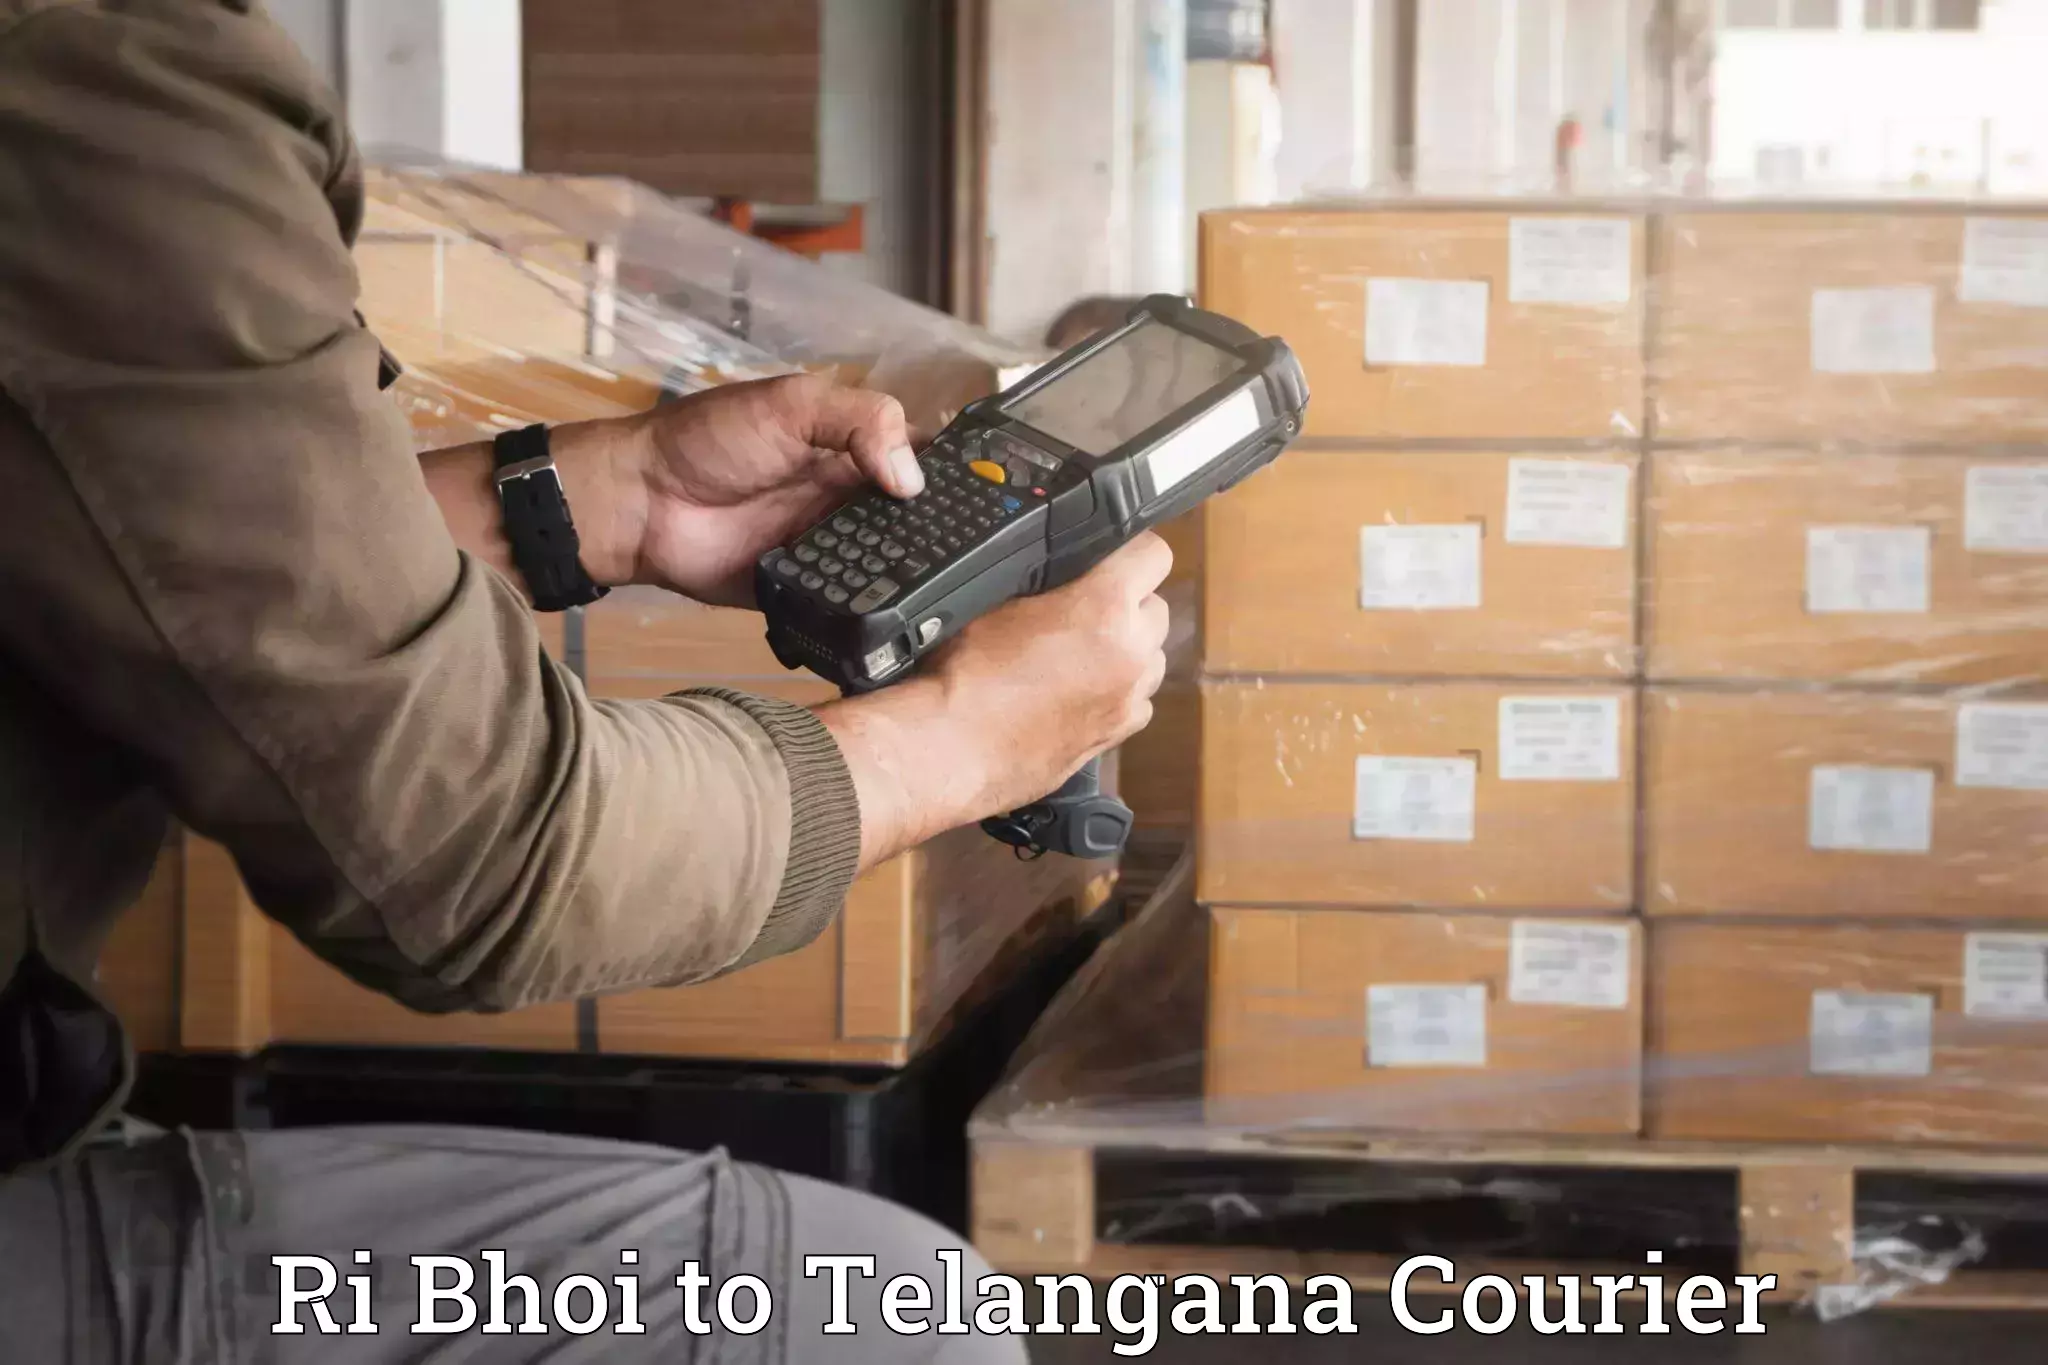 Household moving experts in Ri Bhoi to Bhuvanagiri